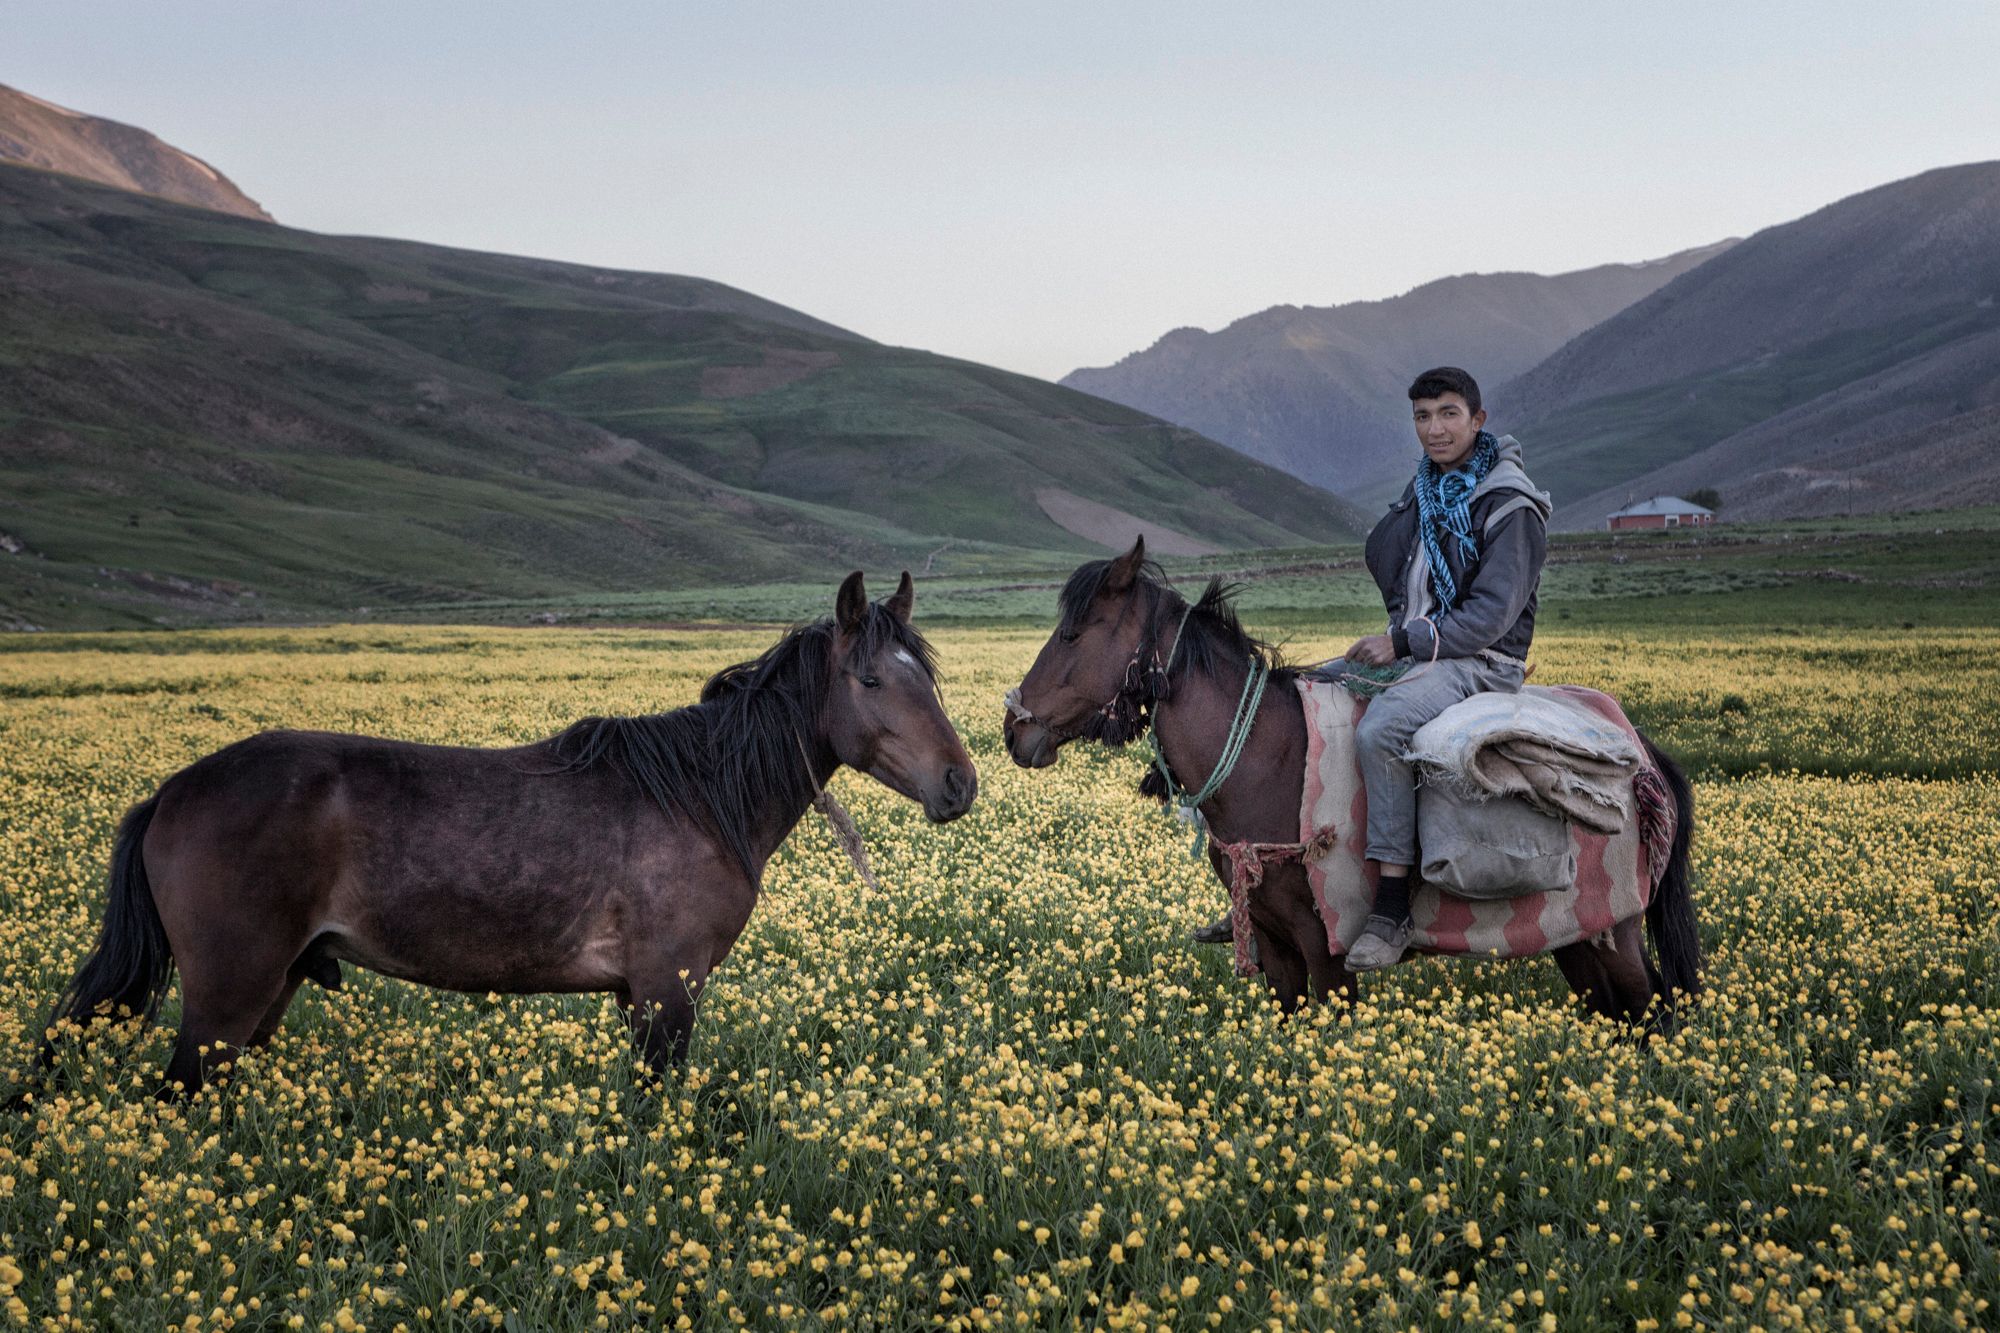 WeTransfer, Türk fotoğrafçı Nadir Buçan'ın eserlerini paylaştı